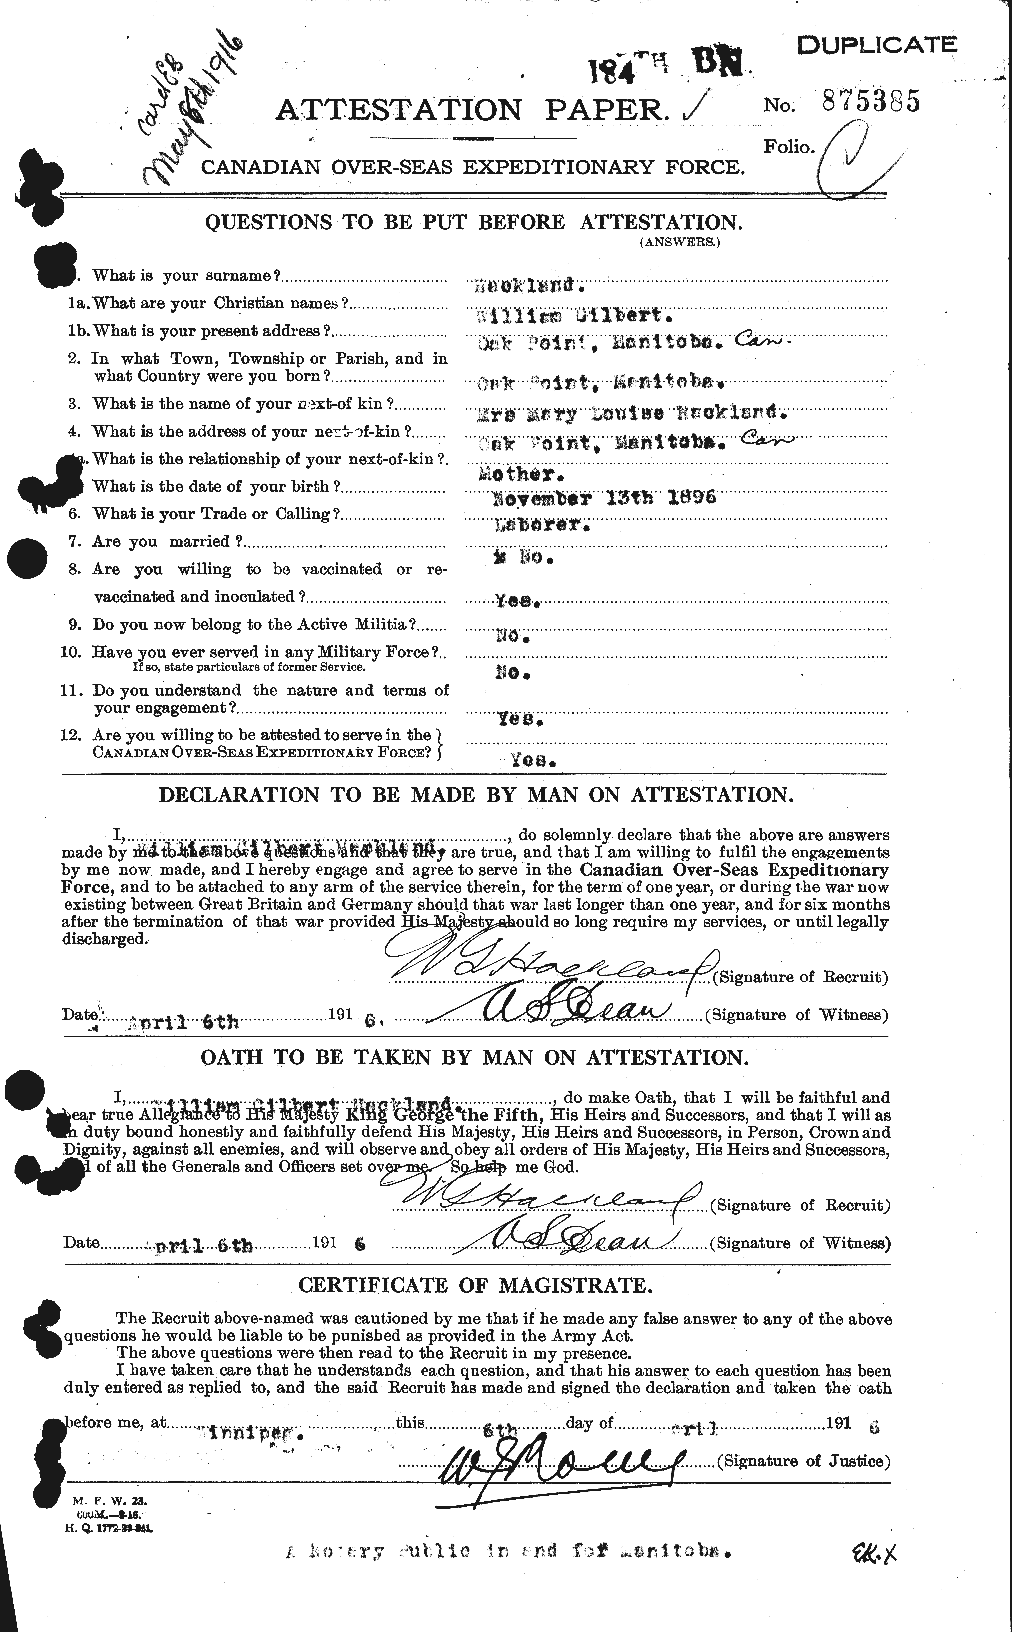 Dossiers du Personnel de la Première Guerre mondiale - CEC 368625a